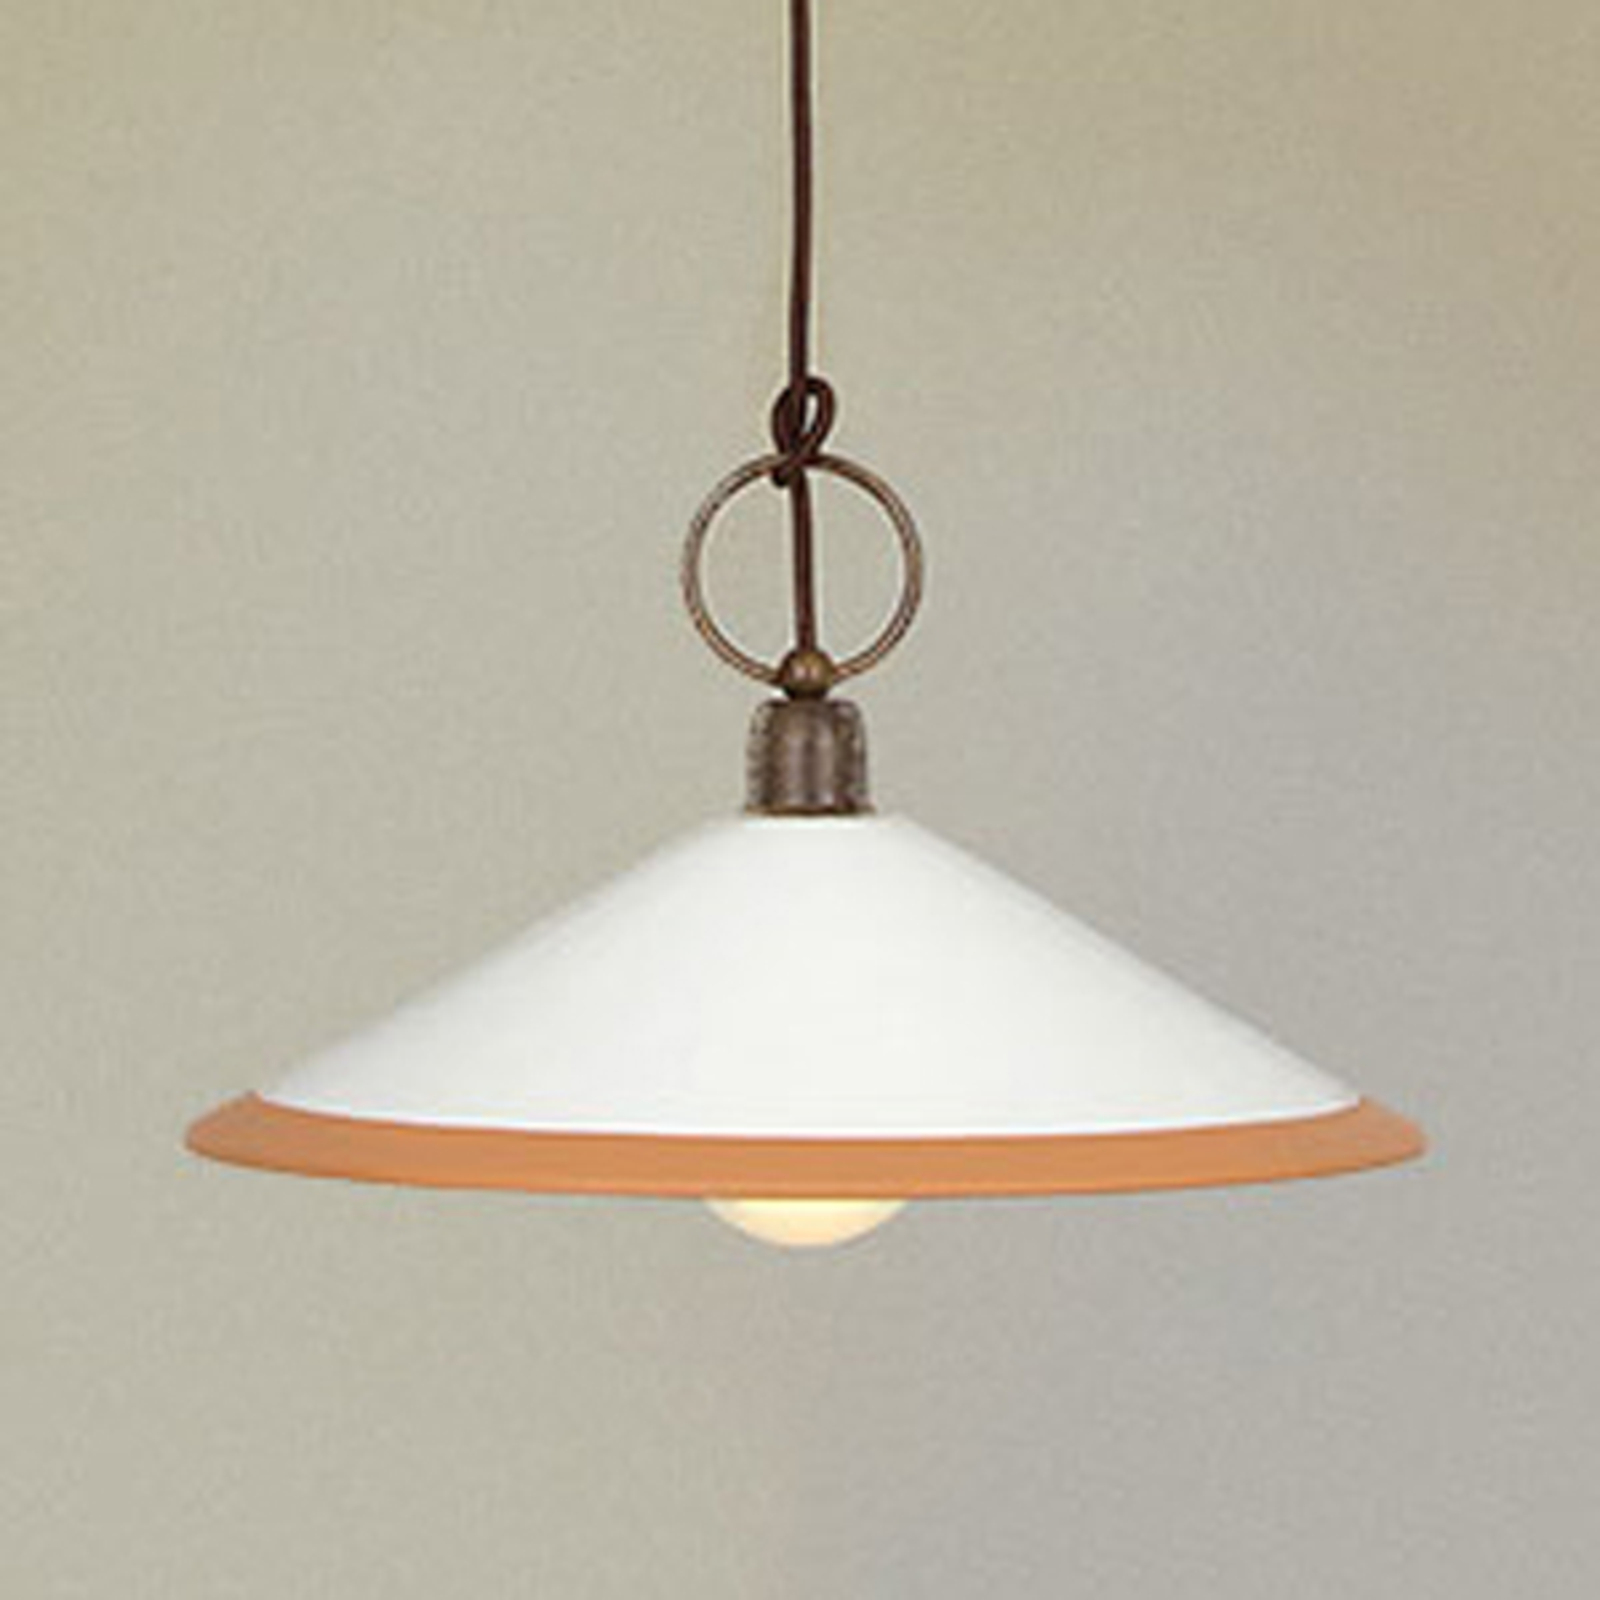 Hanglamp 4560/S41, bruin, wit, oker